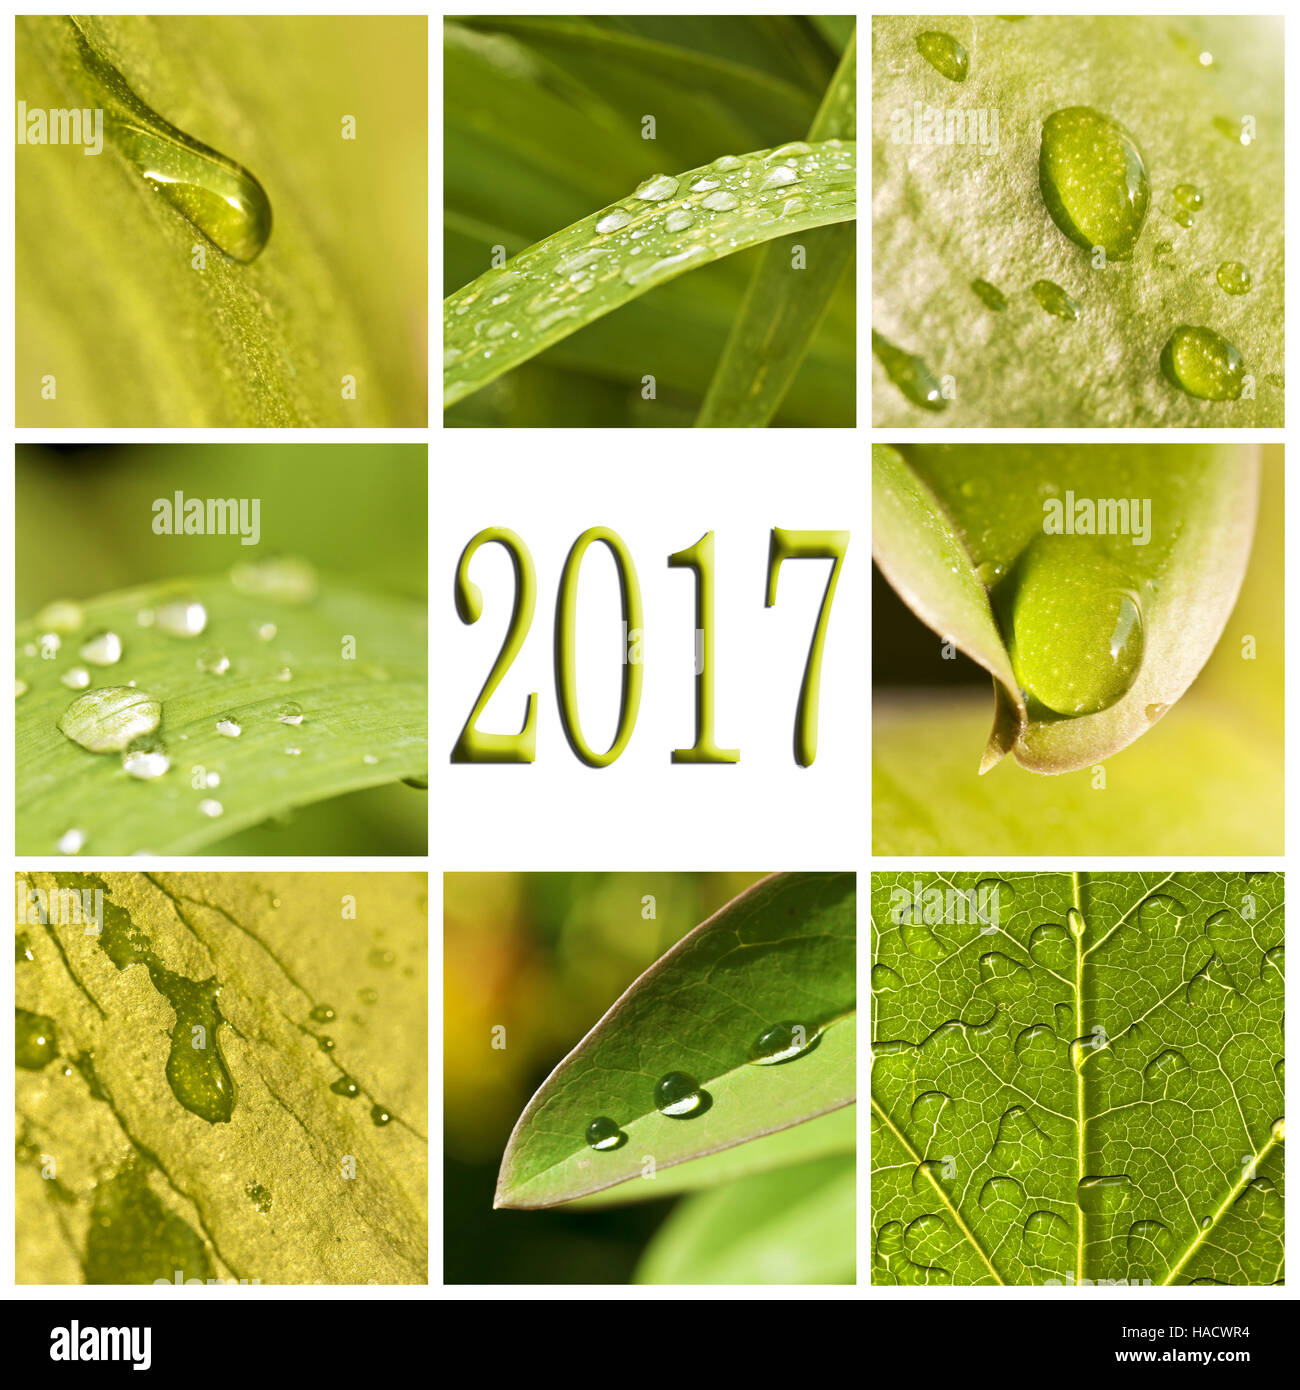 2017, foglie verdi e le gocce di pioggia photo collage Foto Stock